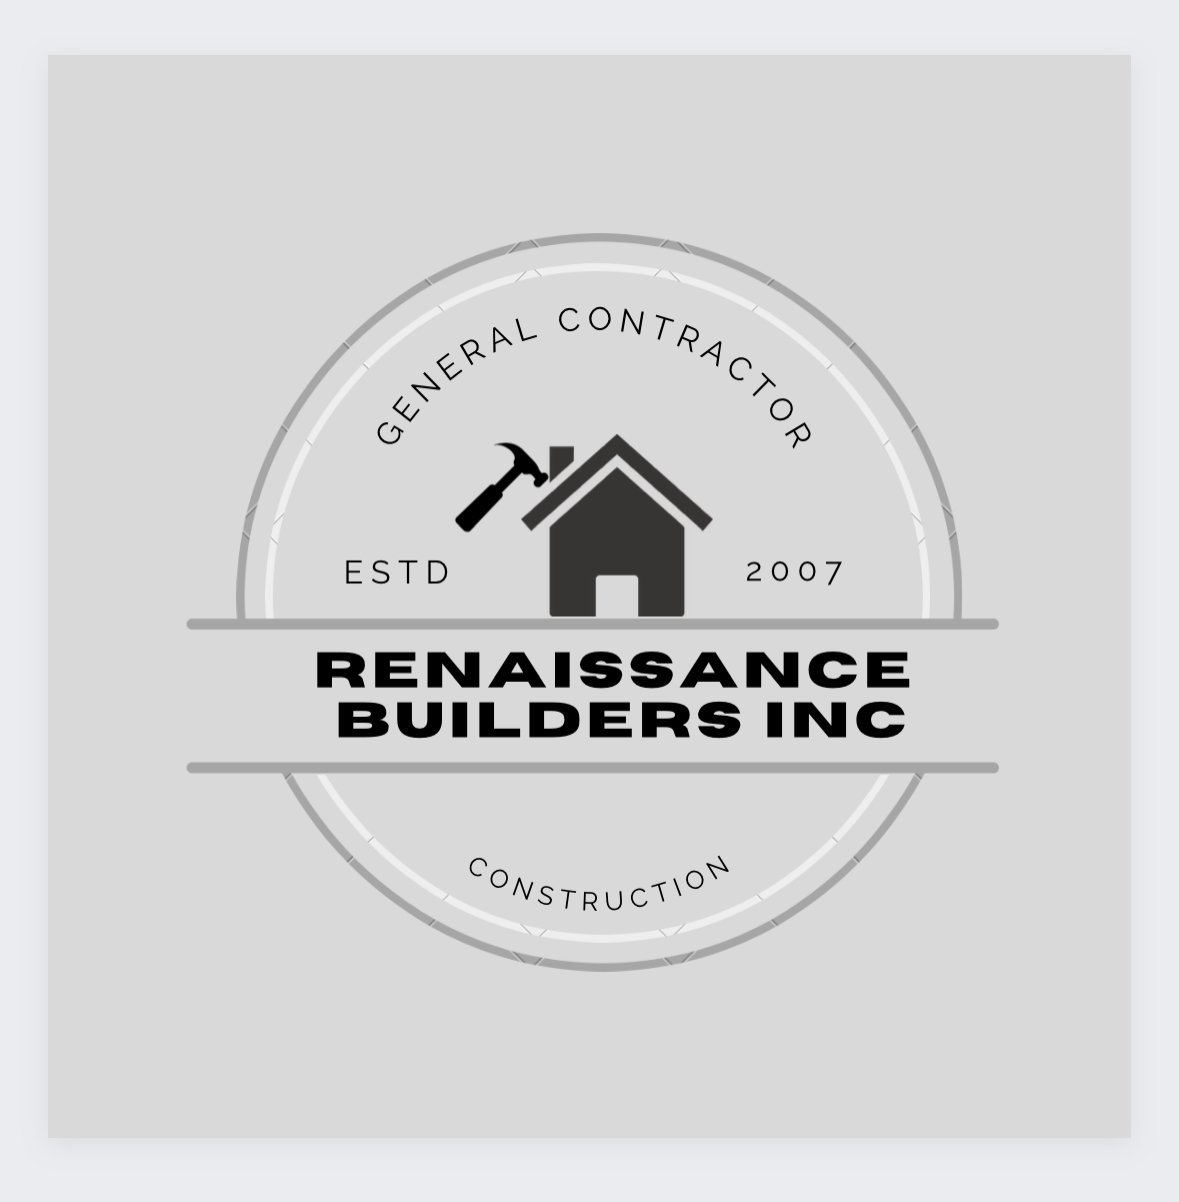 Renaissance Builders Inc